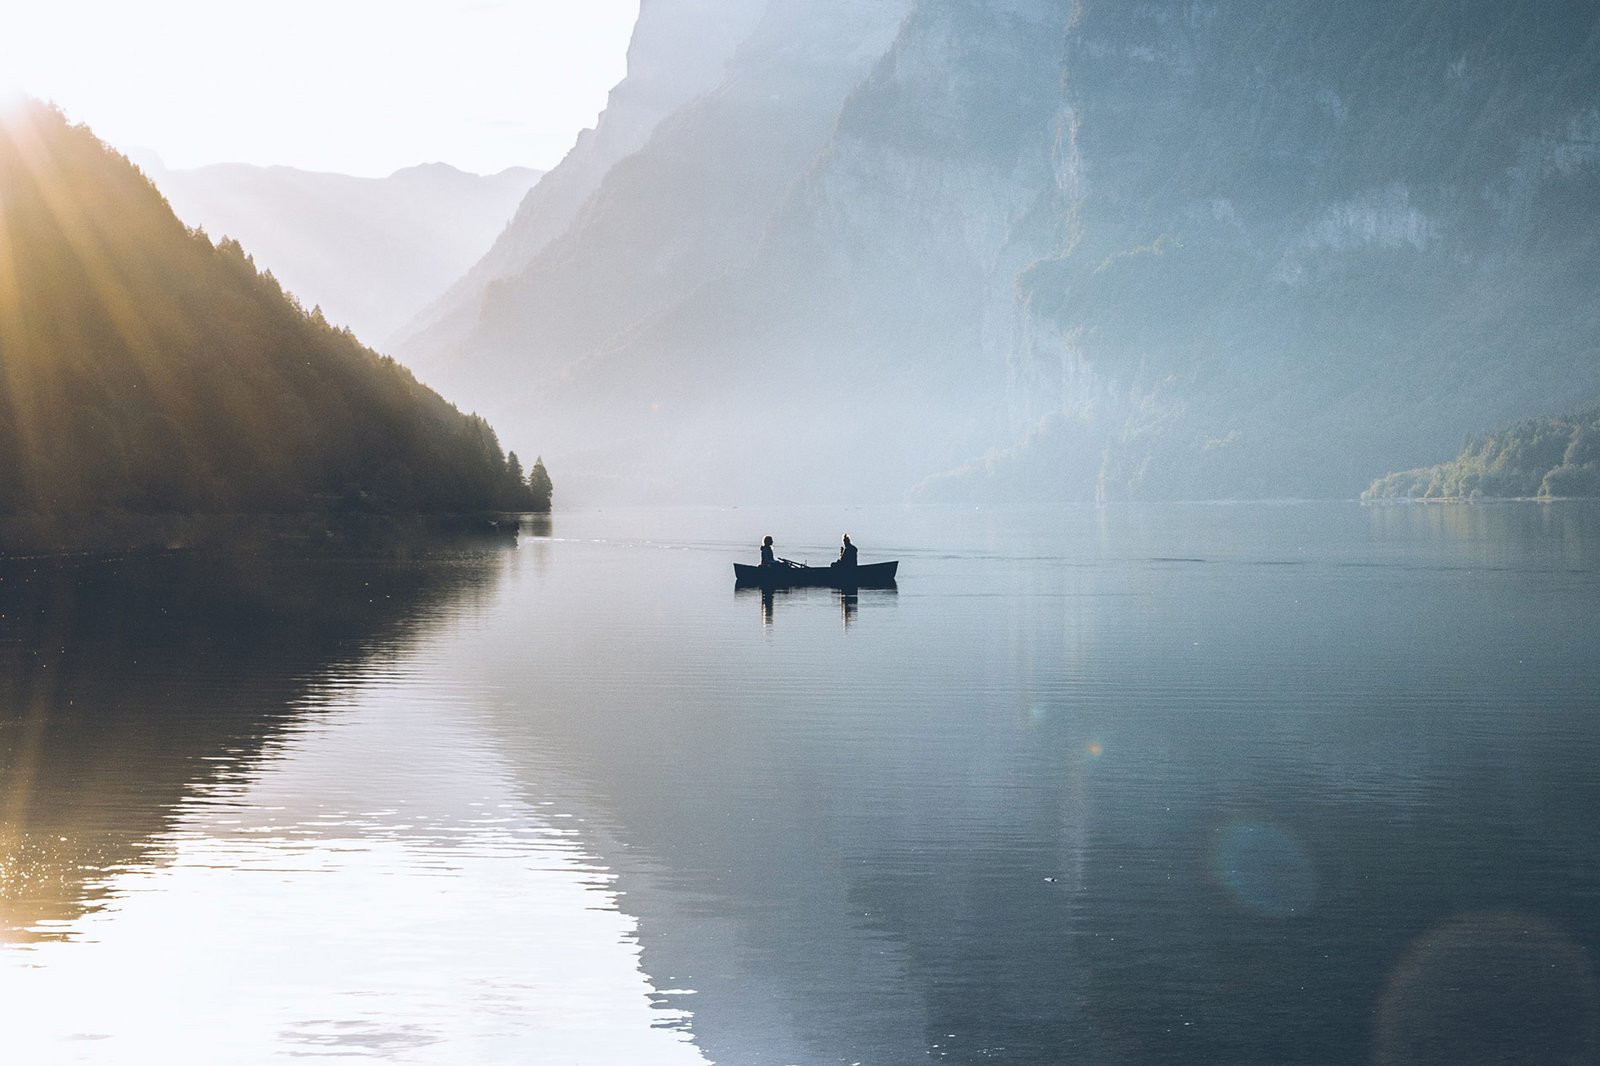 Deux personnes sont sur une petite barque au milieu d'un lac. Le soleil couchant commence à disparaître derrière les montagnes avoisinantes.